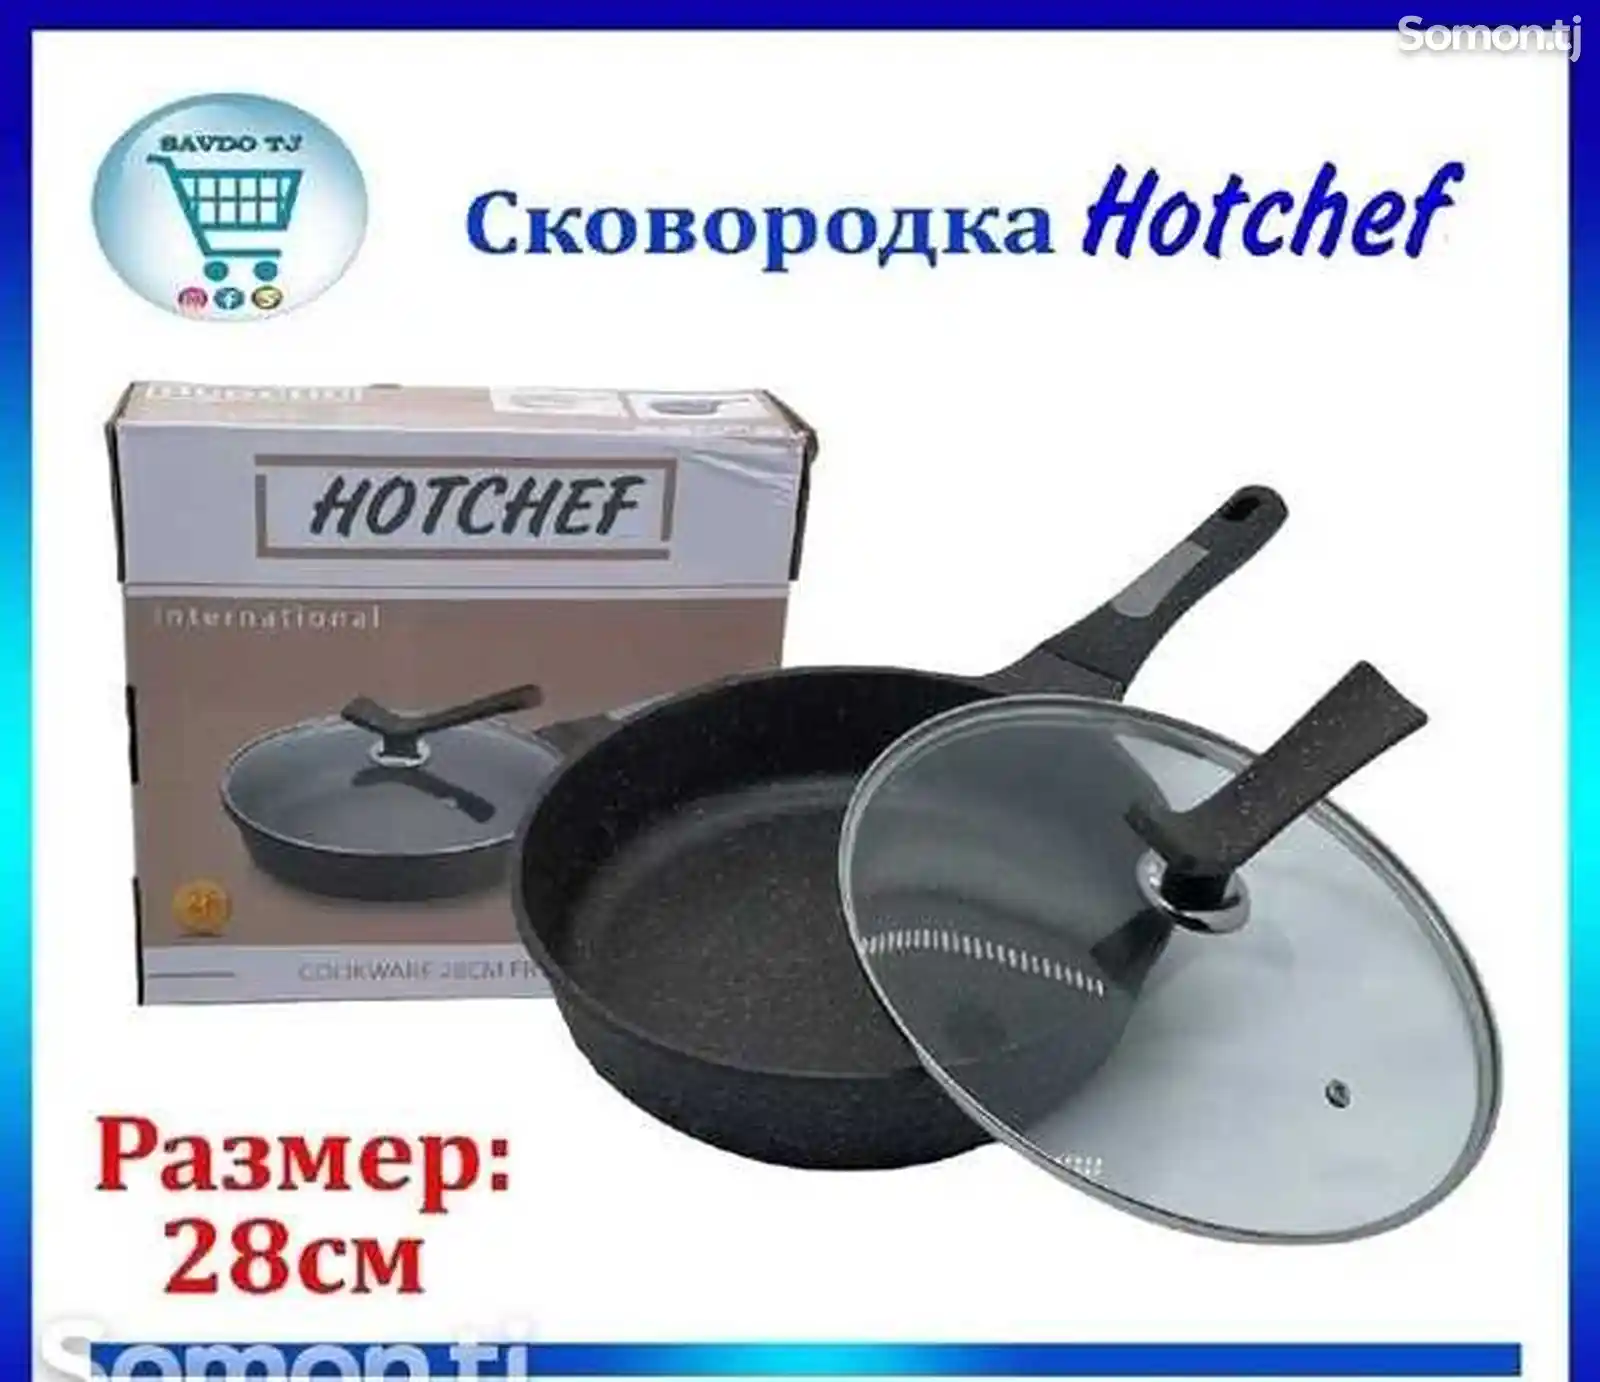 Сковородка Hotchef-3